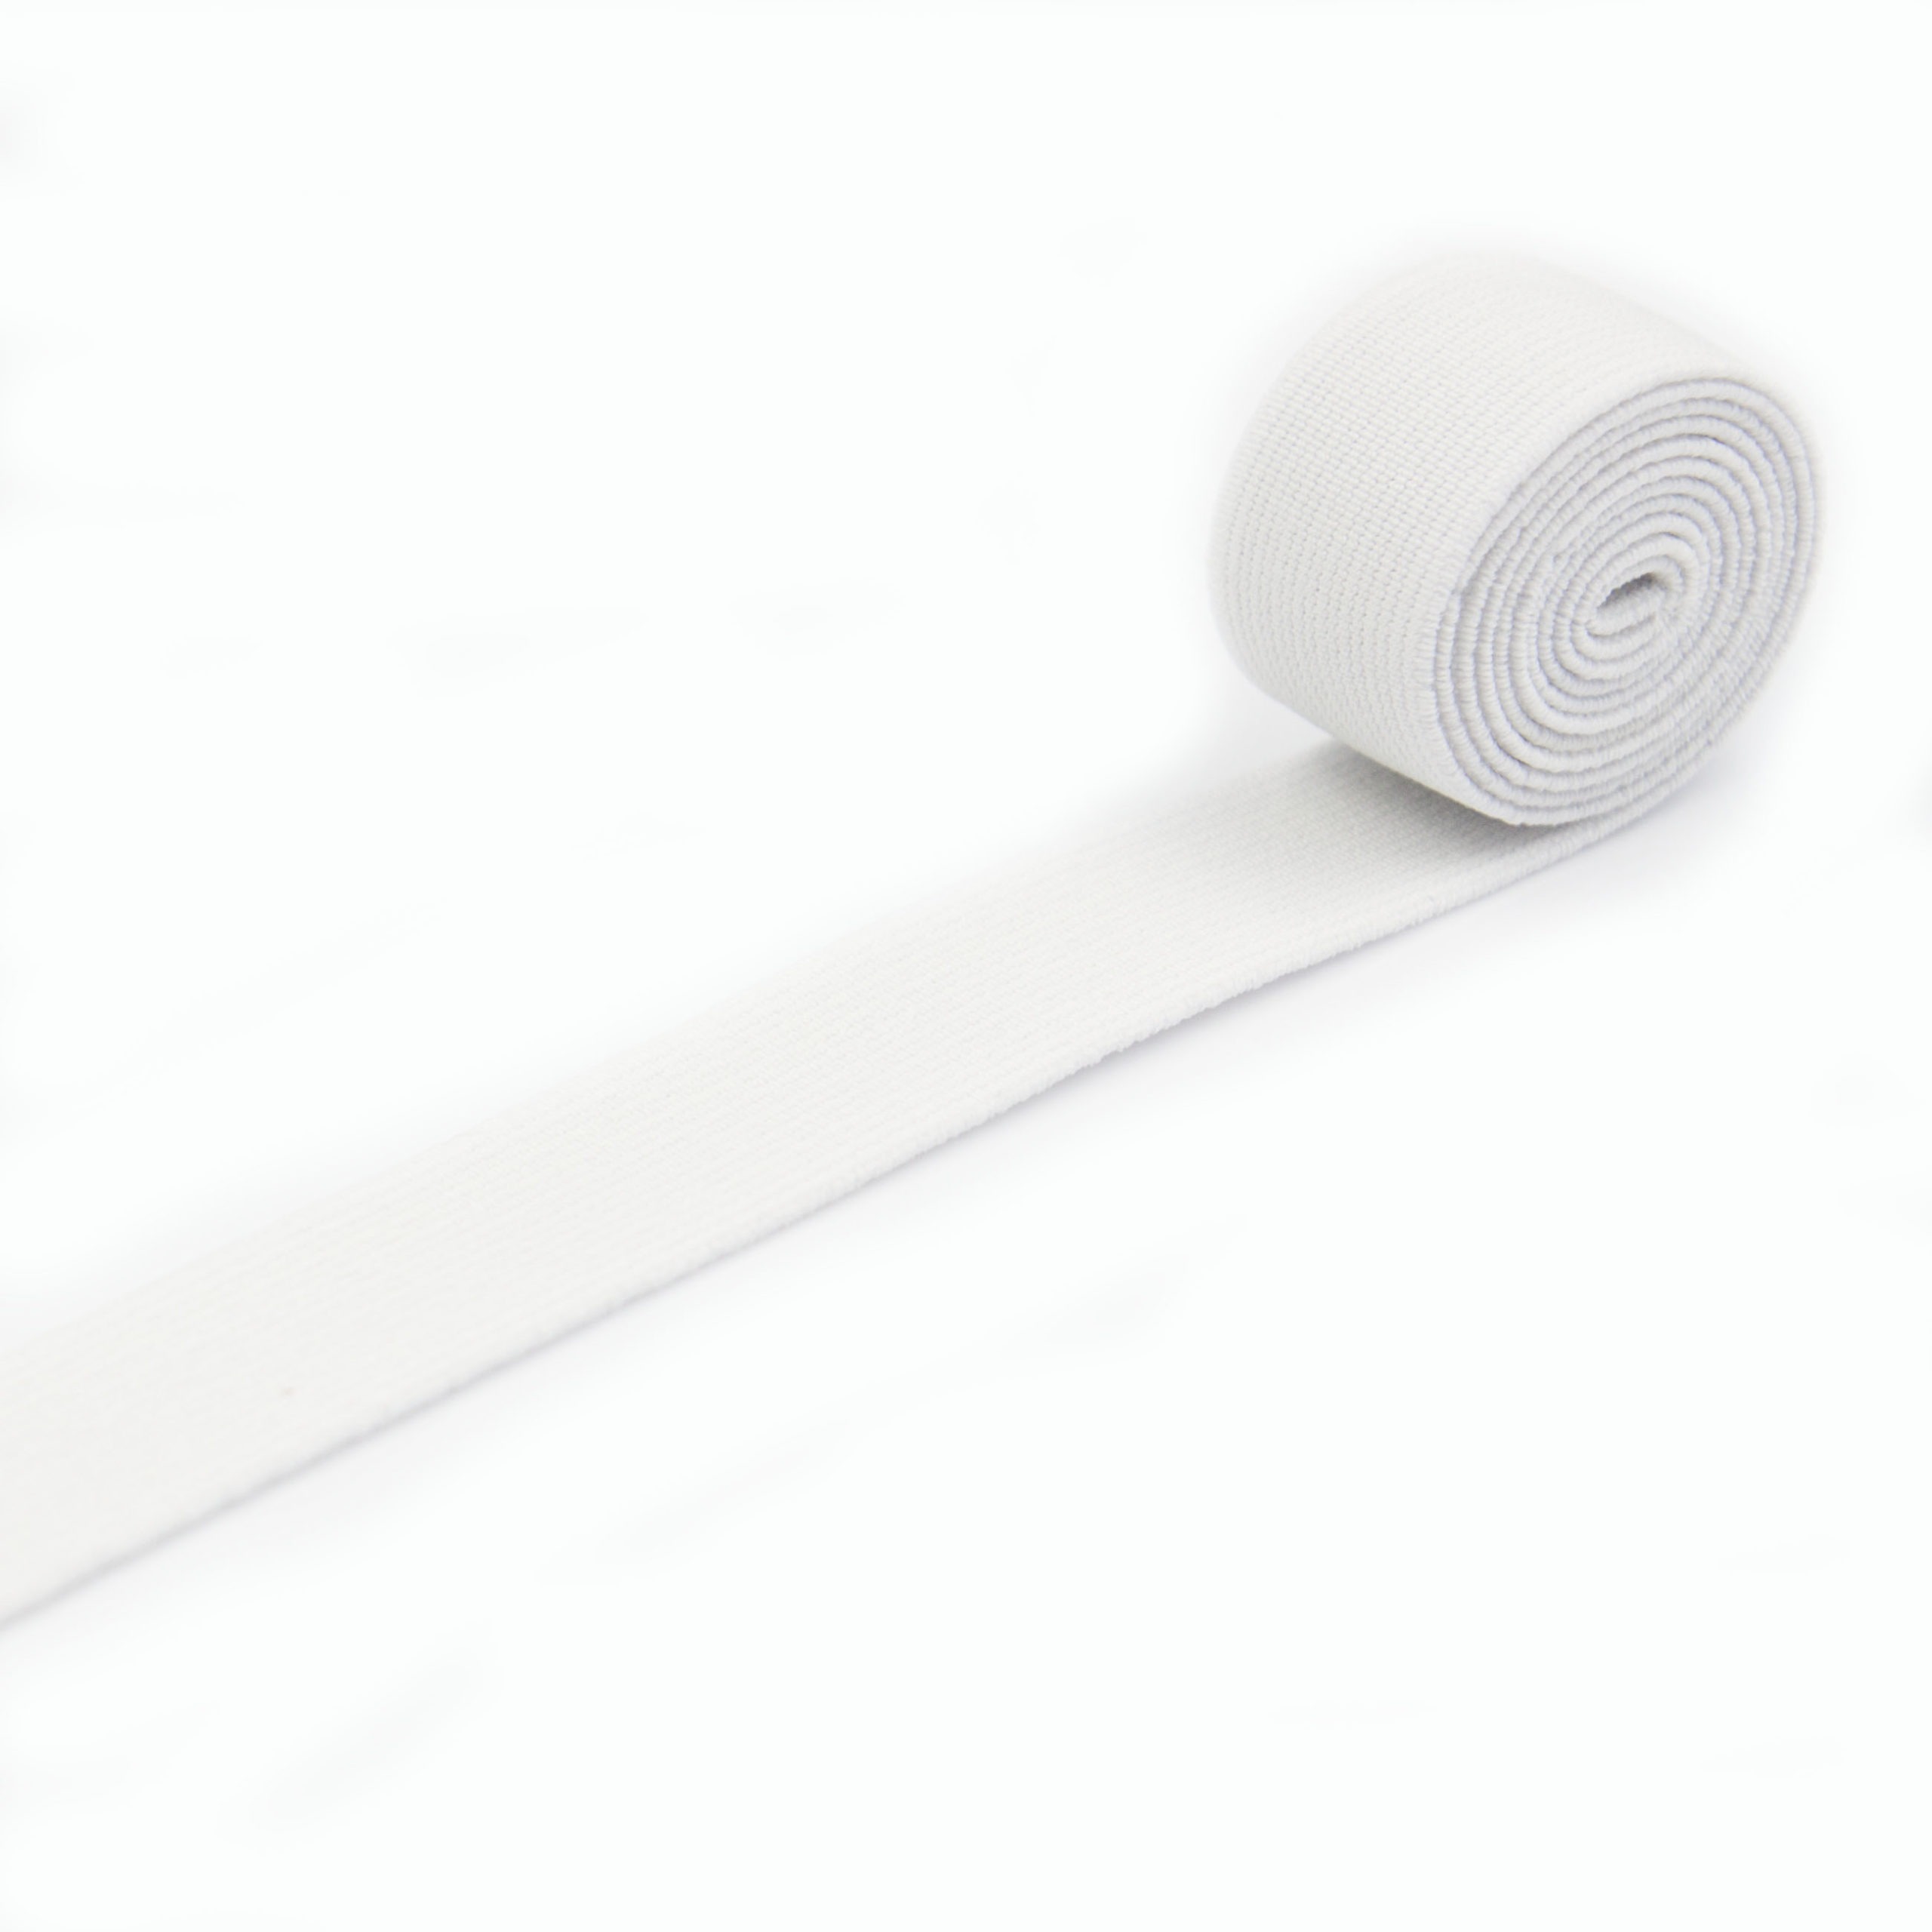 Guma tkana w kolorze białym do odzieży i wyrobów technicznych.